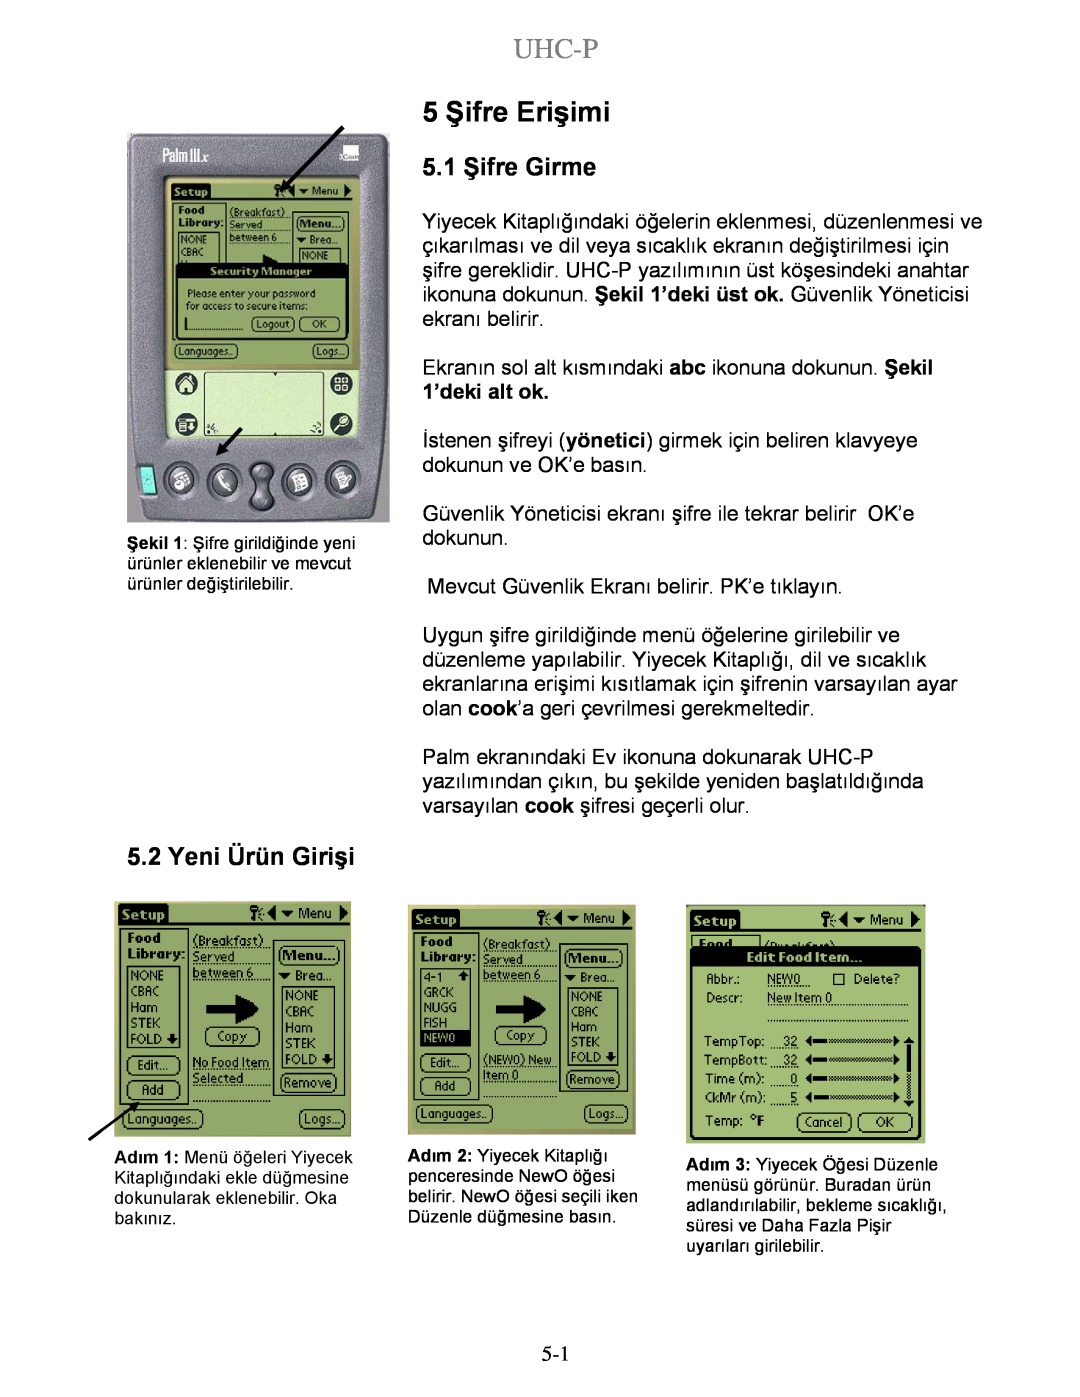 Frymaster UHC-P 4-yuva, UHC-P 2-yuva manual 5 Şifre Erişimi, Uhc-P, Yeni Ürün Girişi, 5.1 Şifre Girme 